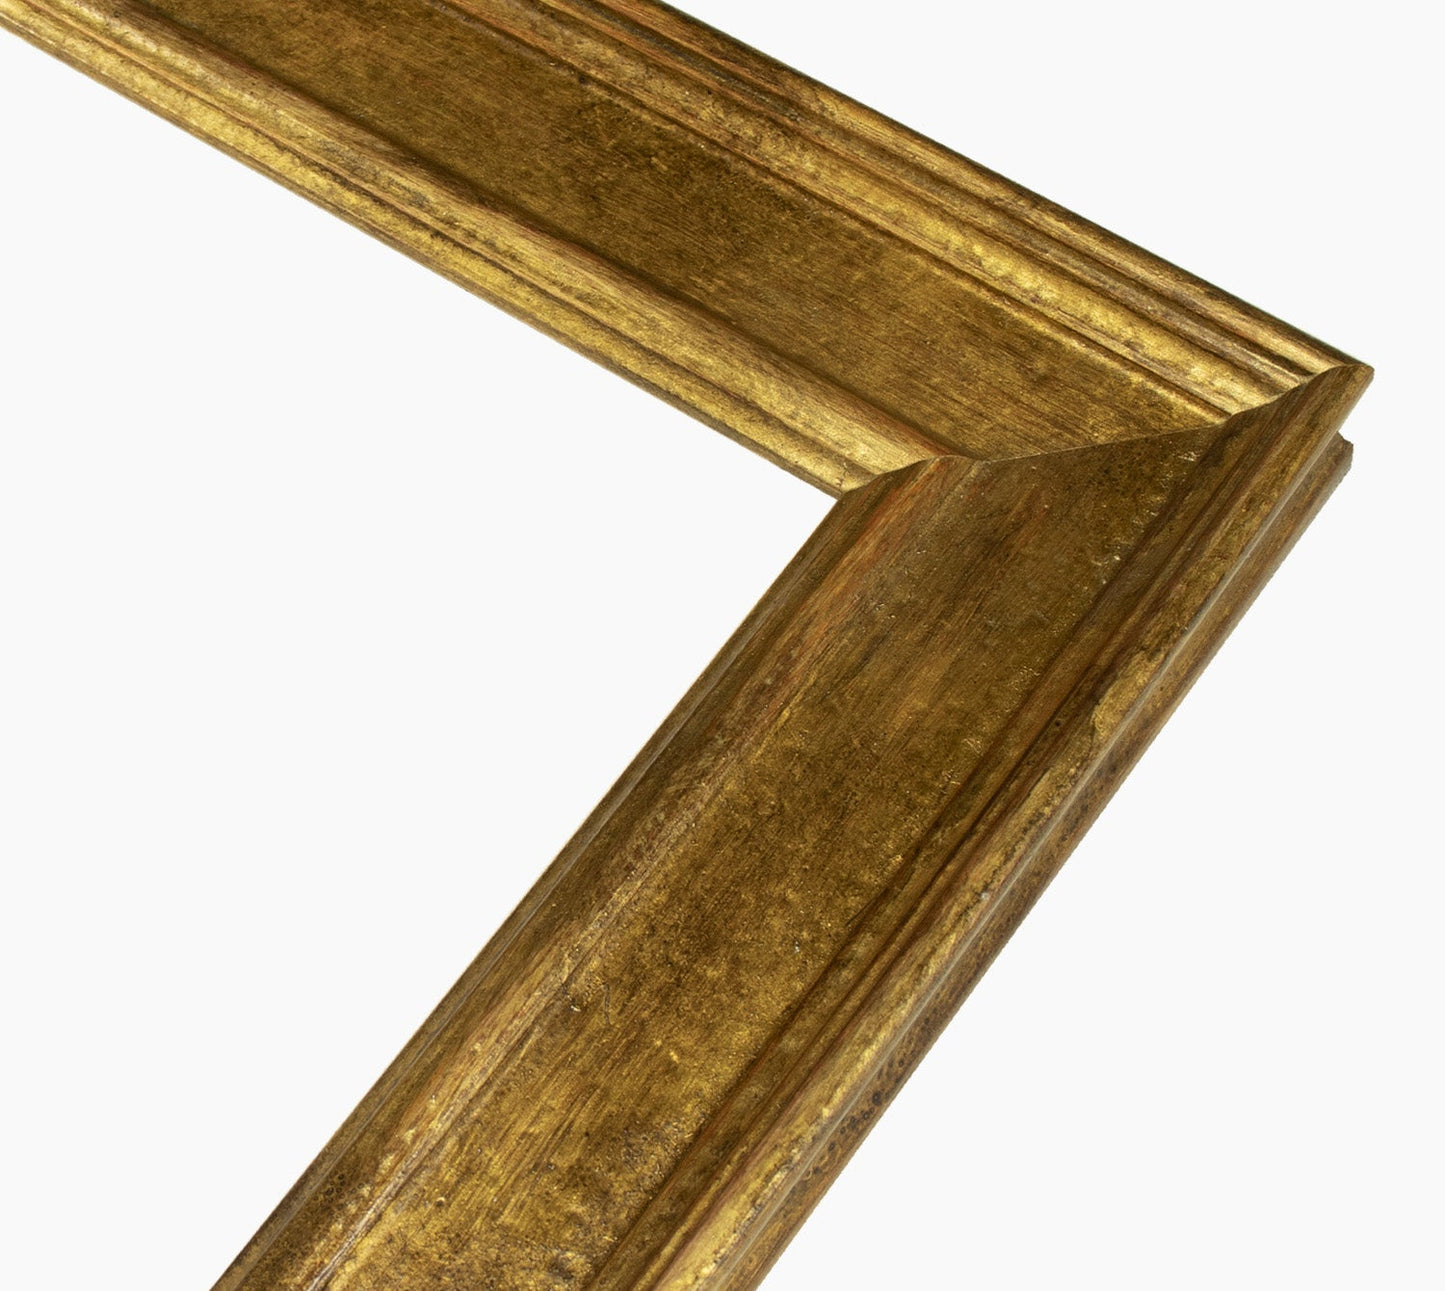 340.230 cadre en bois à la feuille d'or antique mesure de profil 60x30 mm Lombarda cornici S.n.c.